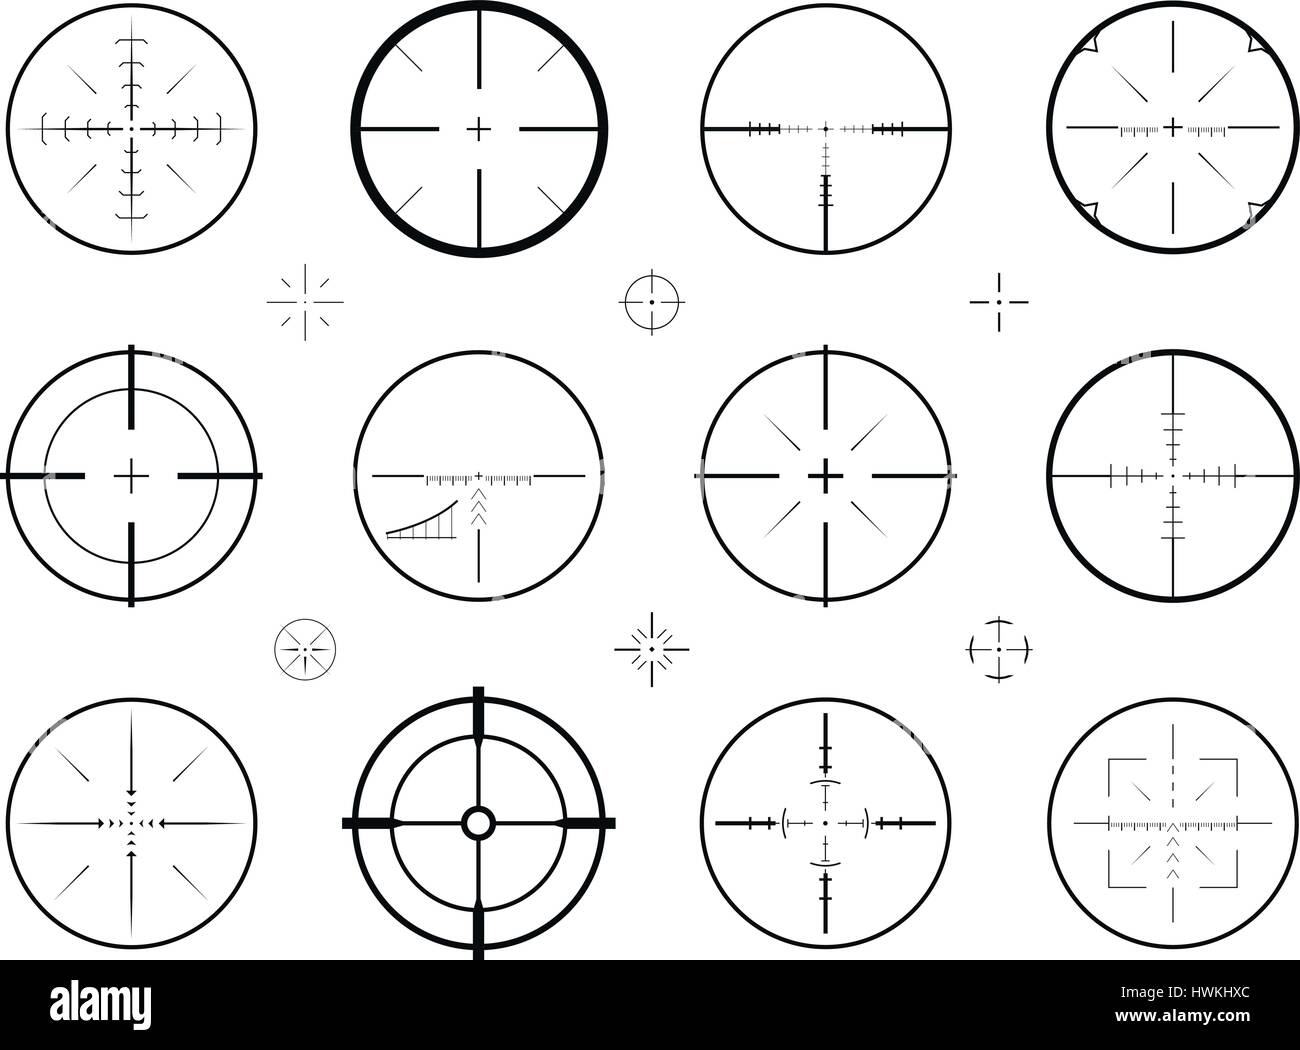 Ziel, Scharfschützen Visierung der Symbole. Jagd, Zielfernrohr, Fadenkreuz-Symbol. Vektor-illustration Stock Vektor